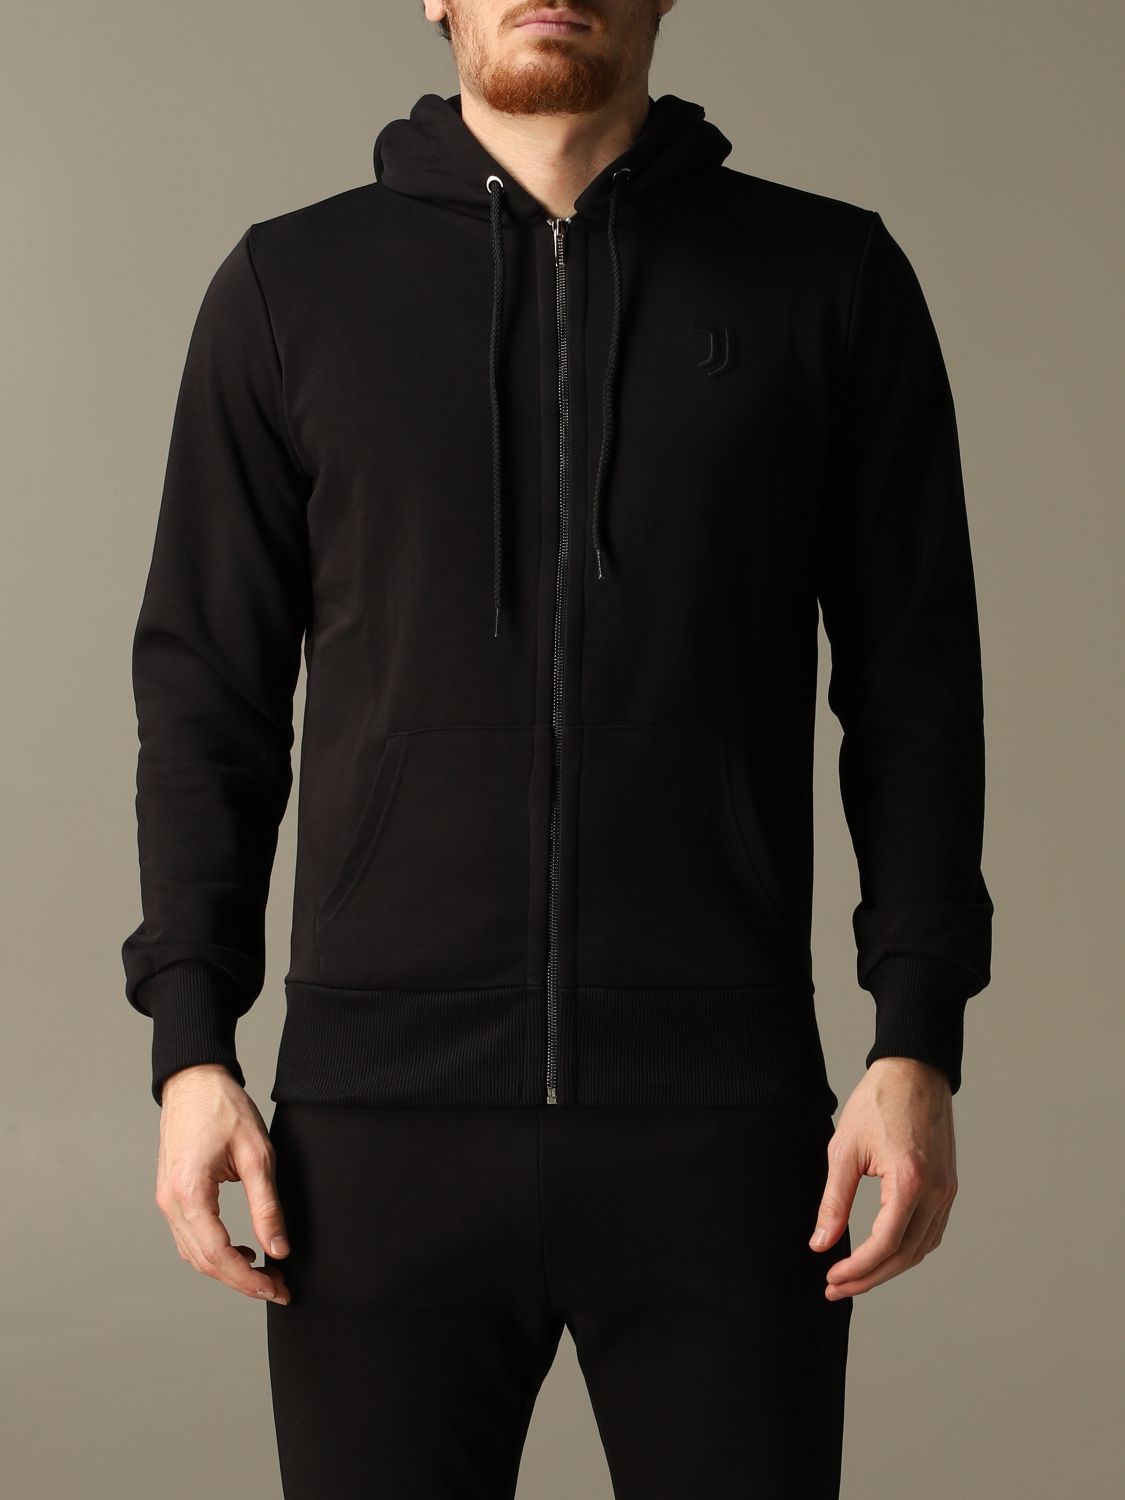 Sweatshirt Juventus Premium: Juventus Premium sweatshirt for men black 1